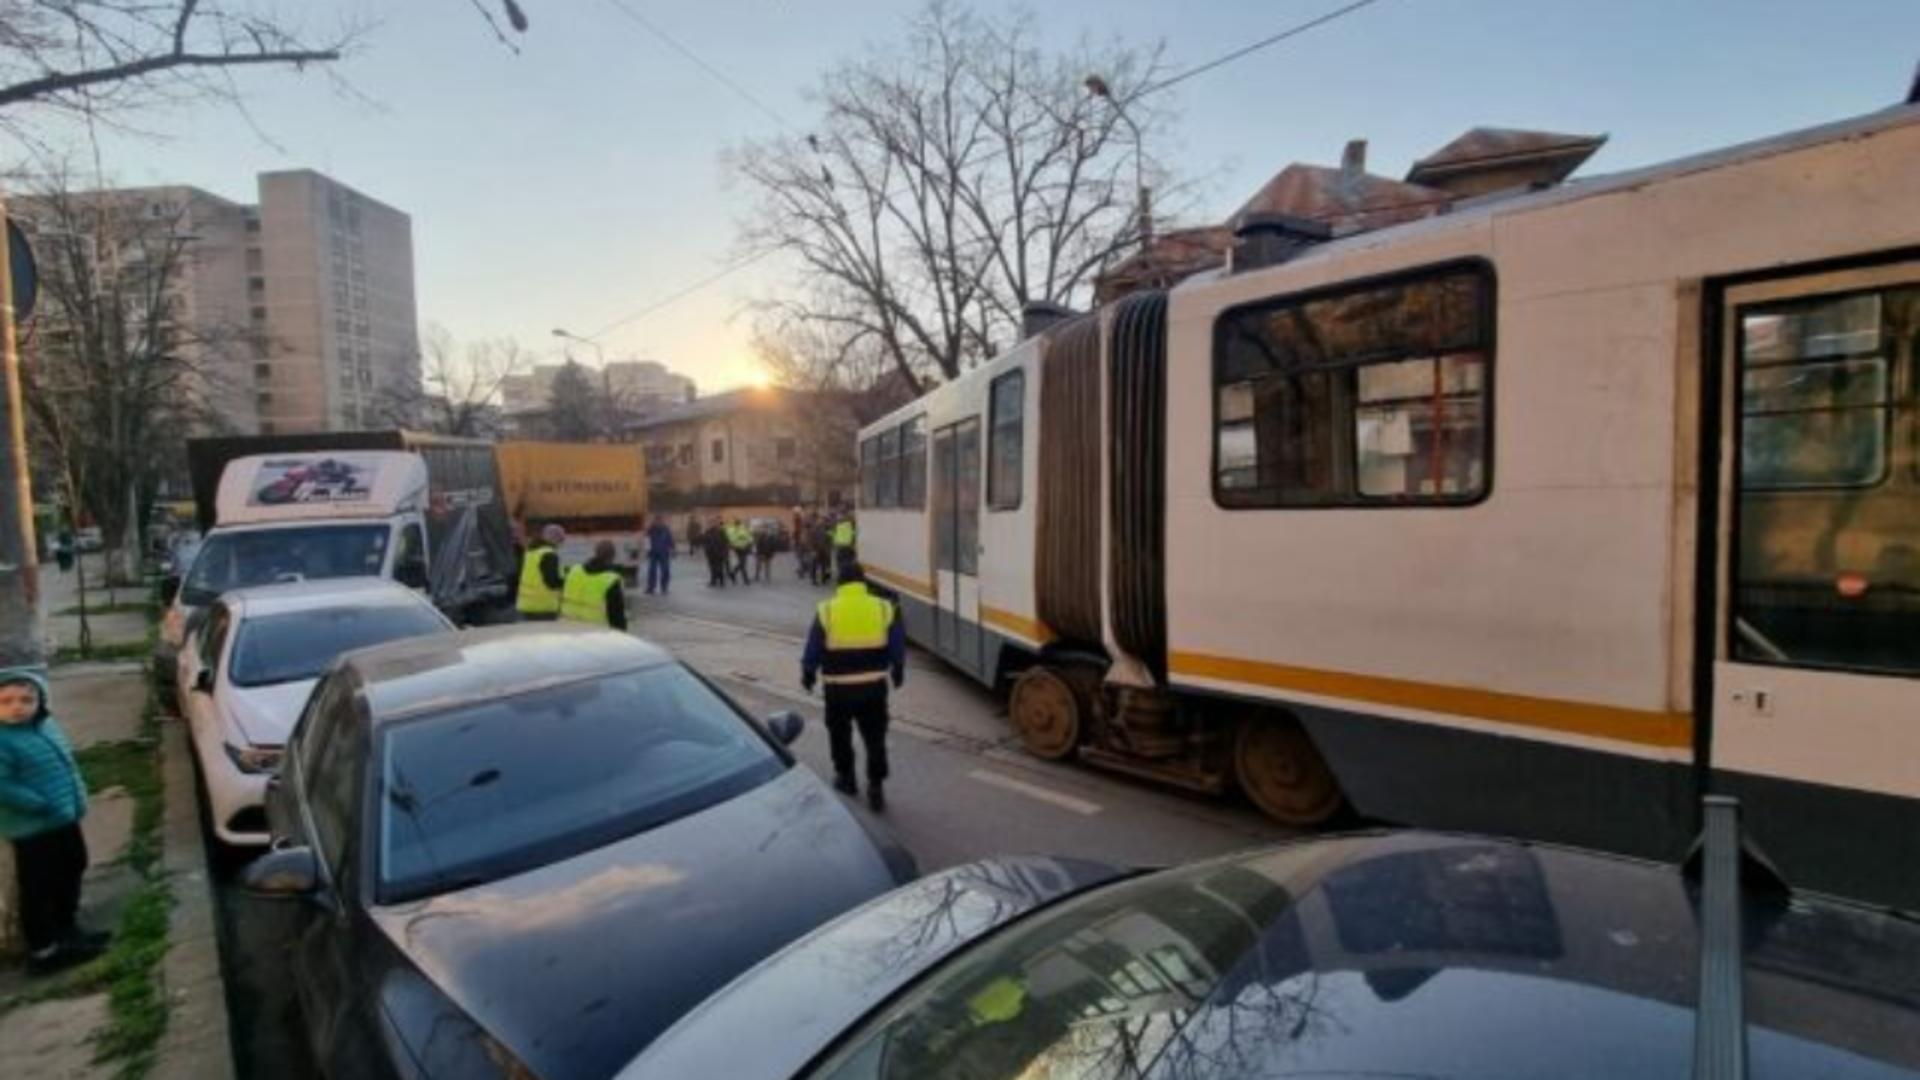 Când le este permis șoferilor să conducă pe linia de tramvai, conform legislației în vigoare